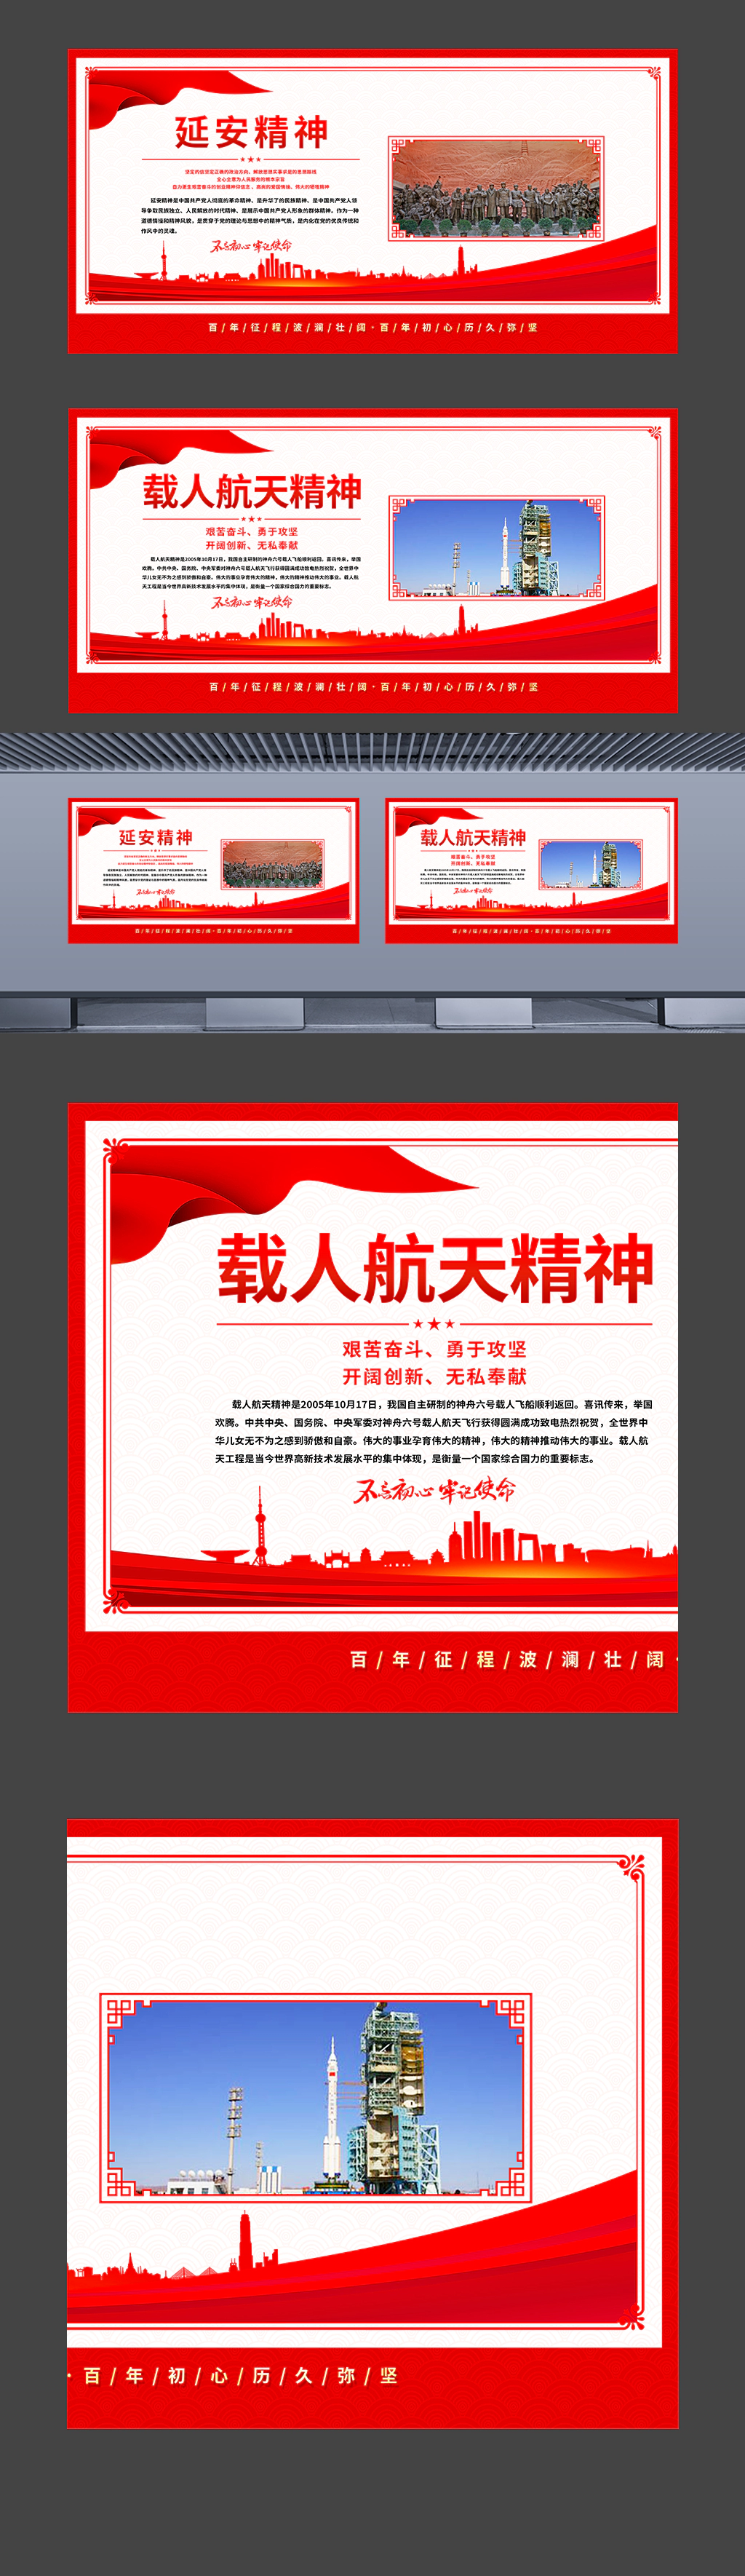 中国精神之延安精神载人航天精神挂图海报